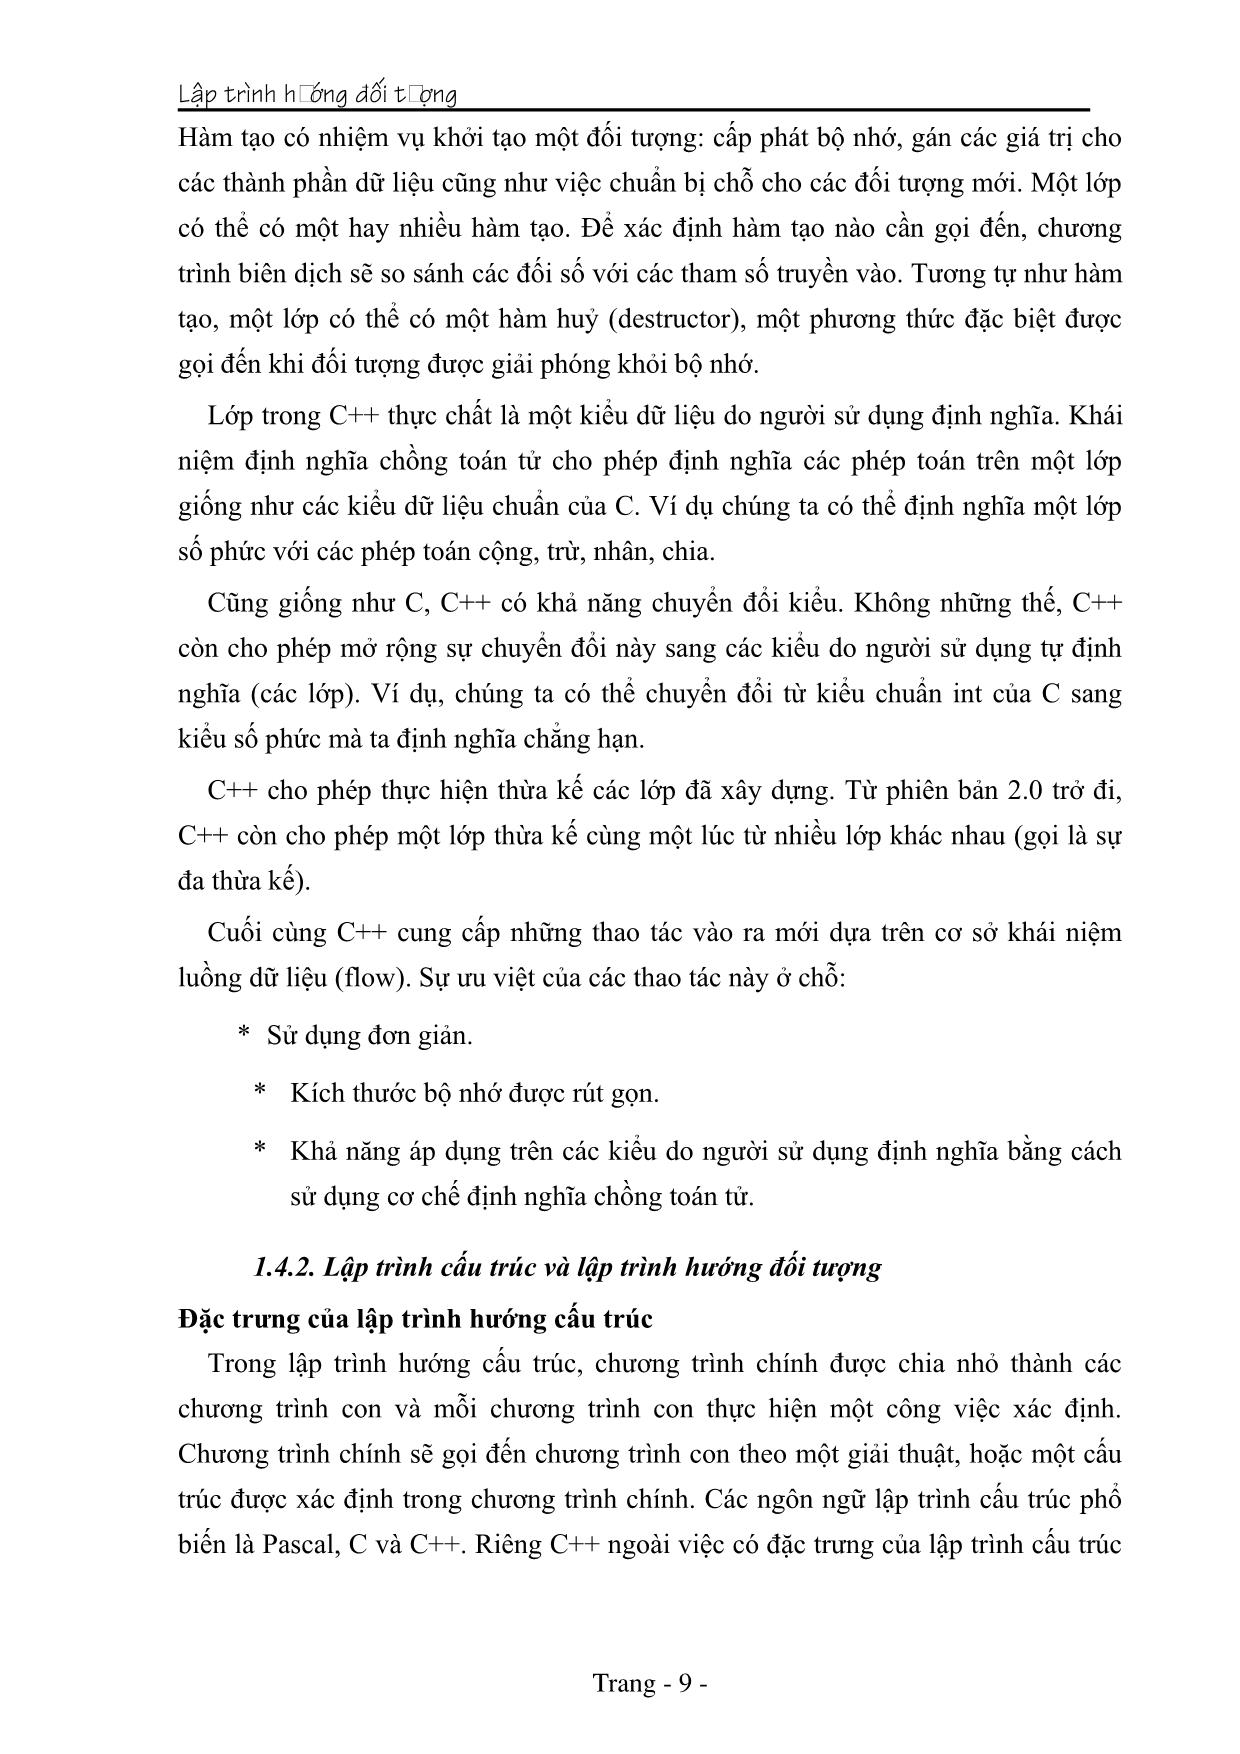 Giáo trình Lập trình hướng đối tượng (Phần 1) trang 9